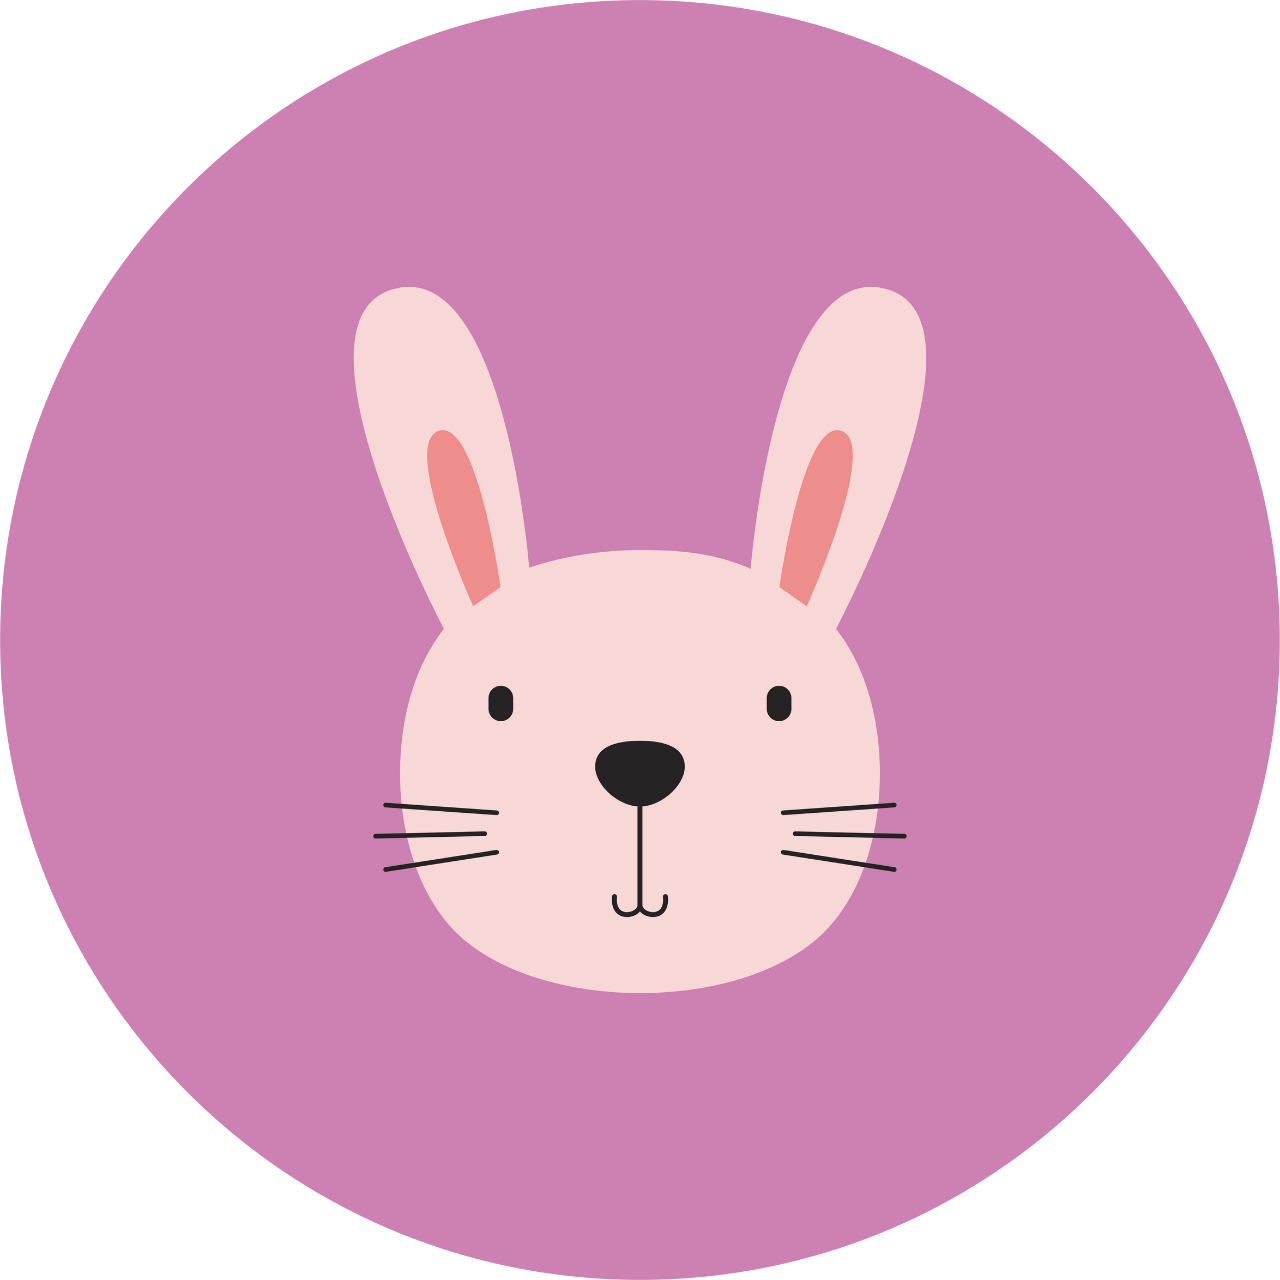 Pembe bir daire içinde pembe renkte ve siyah renkli gözleri ve burnu olan bir tavşan başı